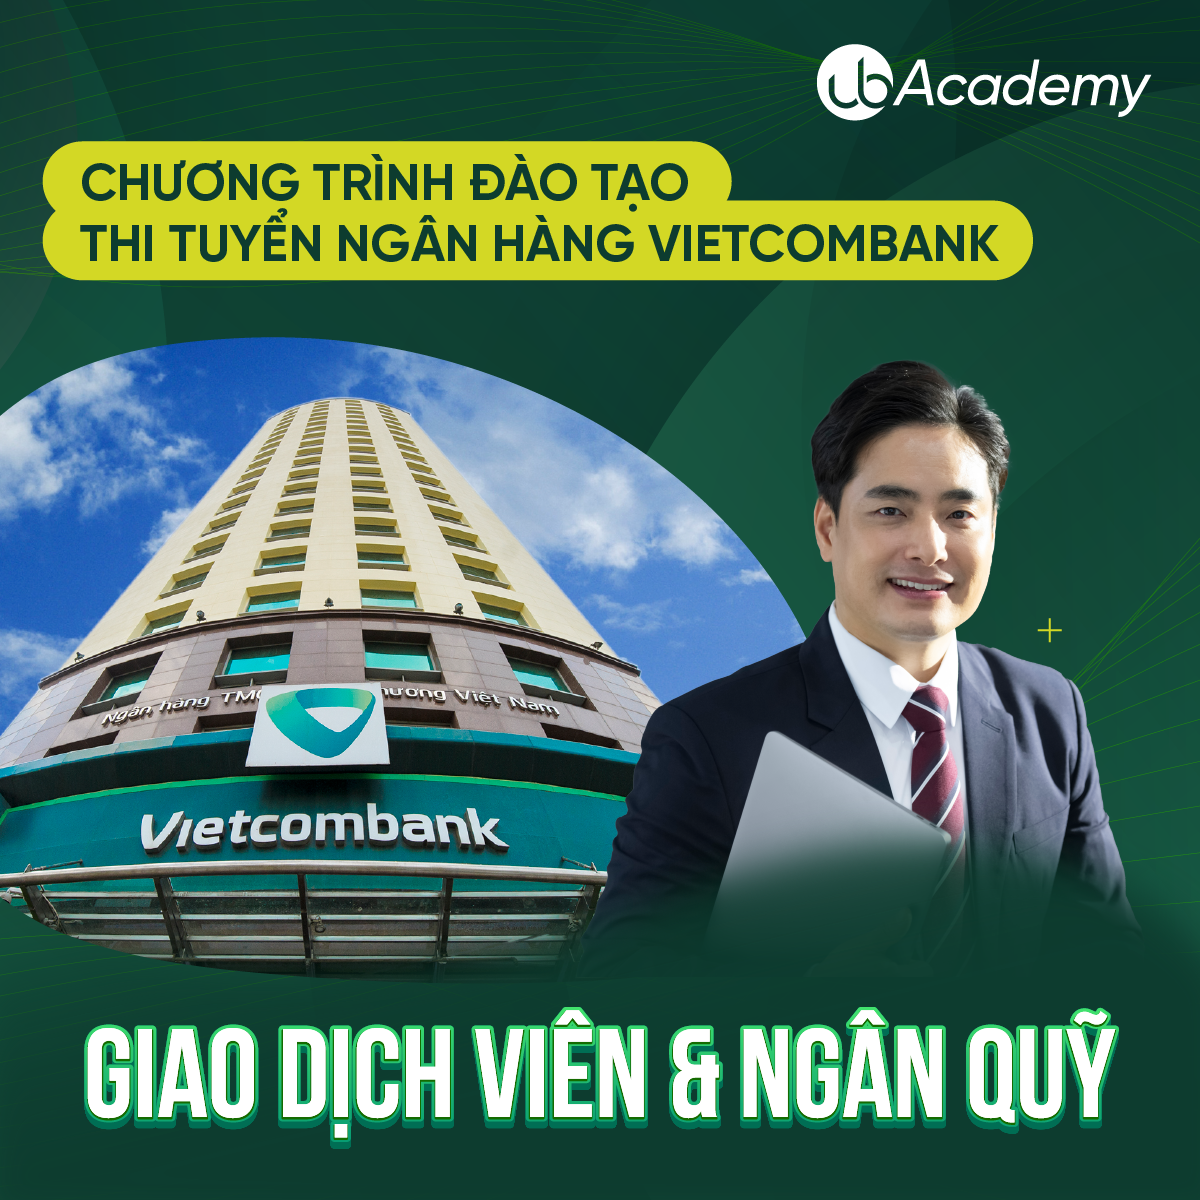 Chương đào tạo thi tuyển Ngân hàng Vietcombank - Vị trí Kế toán/Giao dịch viên